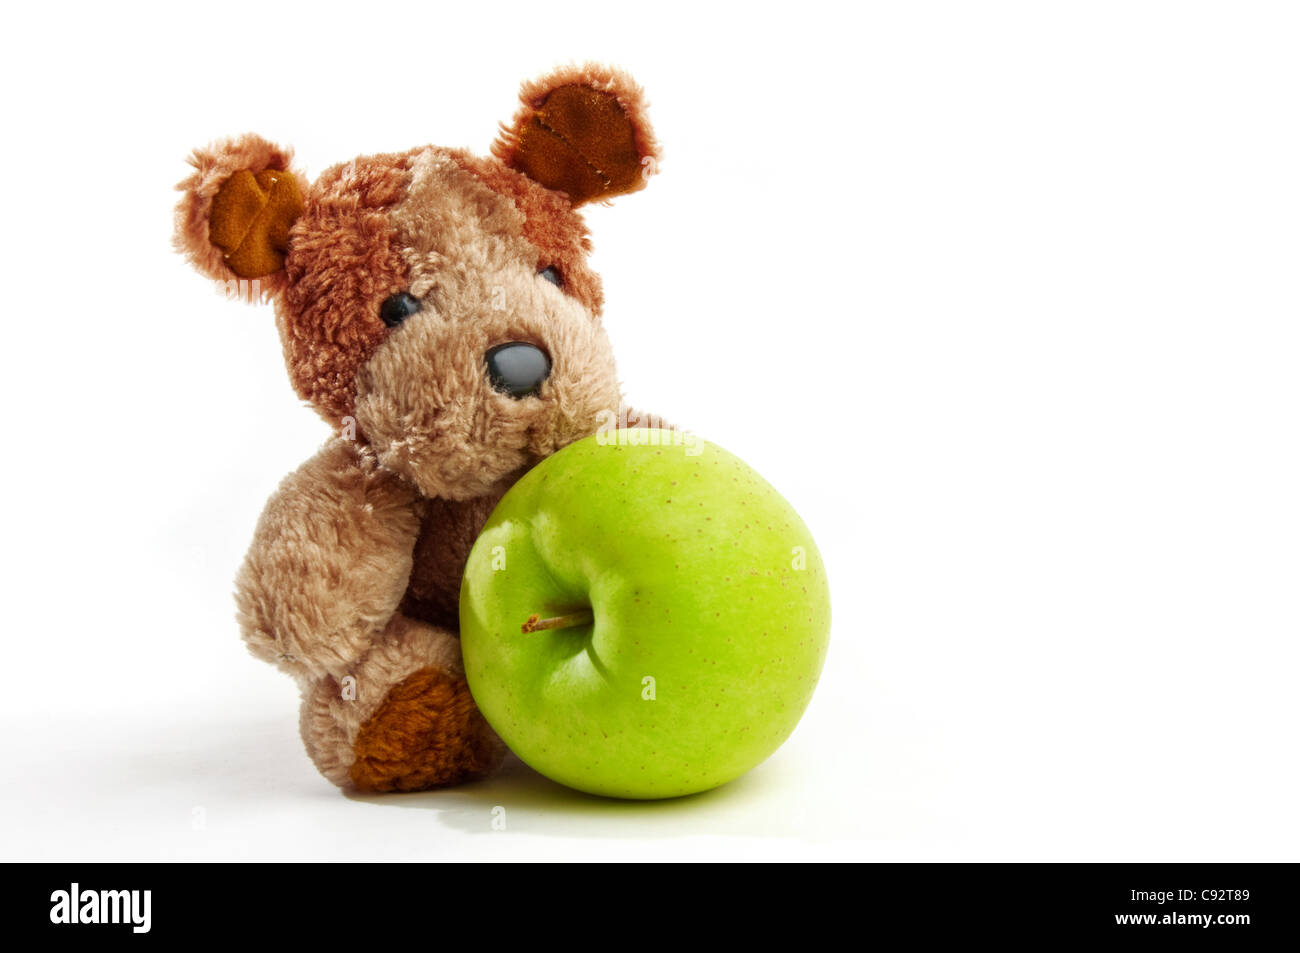 Netter kleiner Teddy Bär hält einen Apfel über einen weißen Hintergrund  Stockfotografie - Alamy